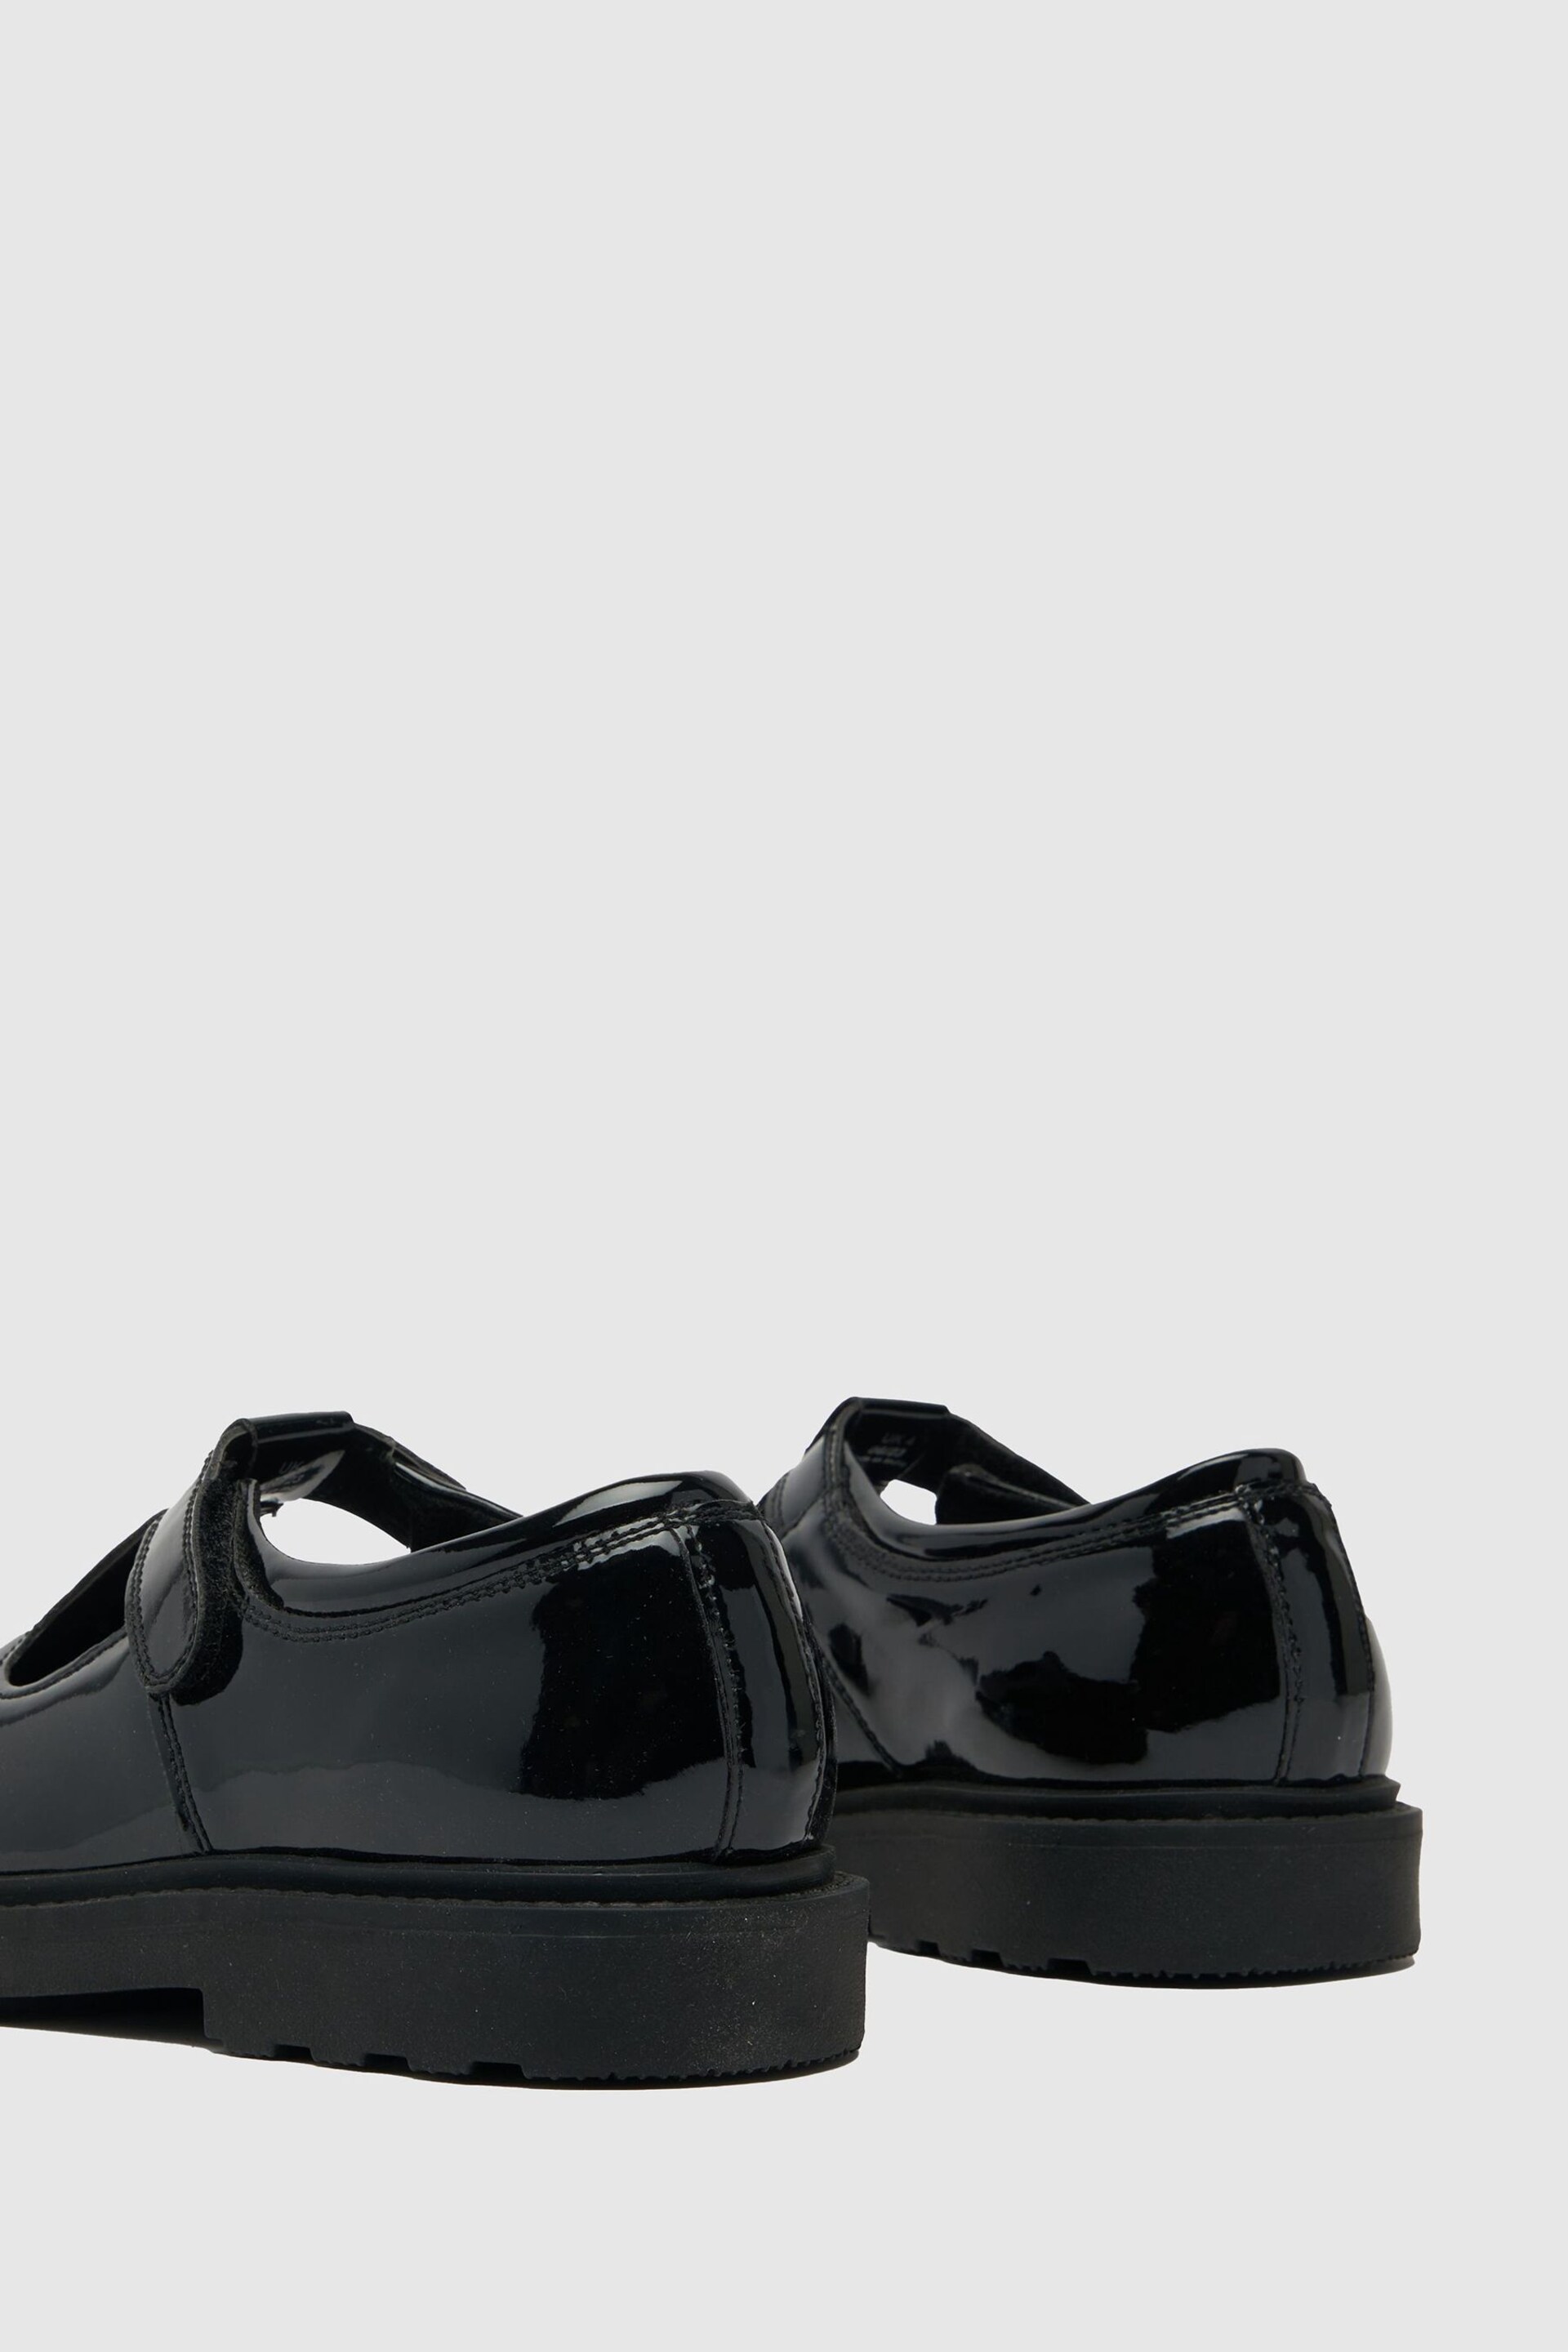 Schuh Leaf Black Shoes - Image 4 of 4